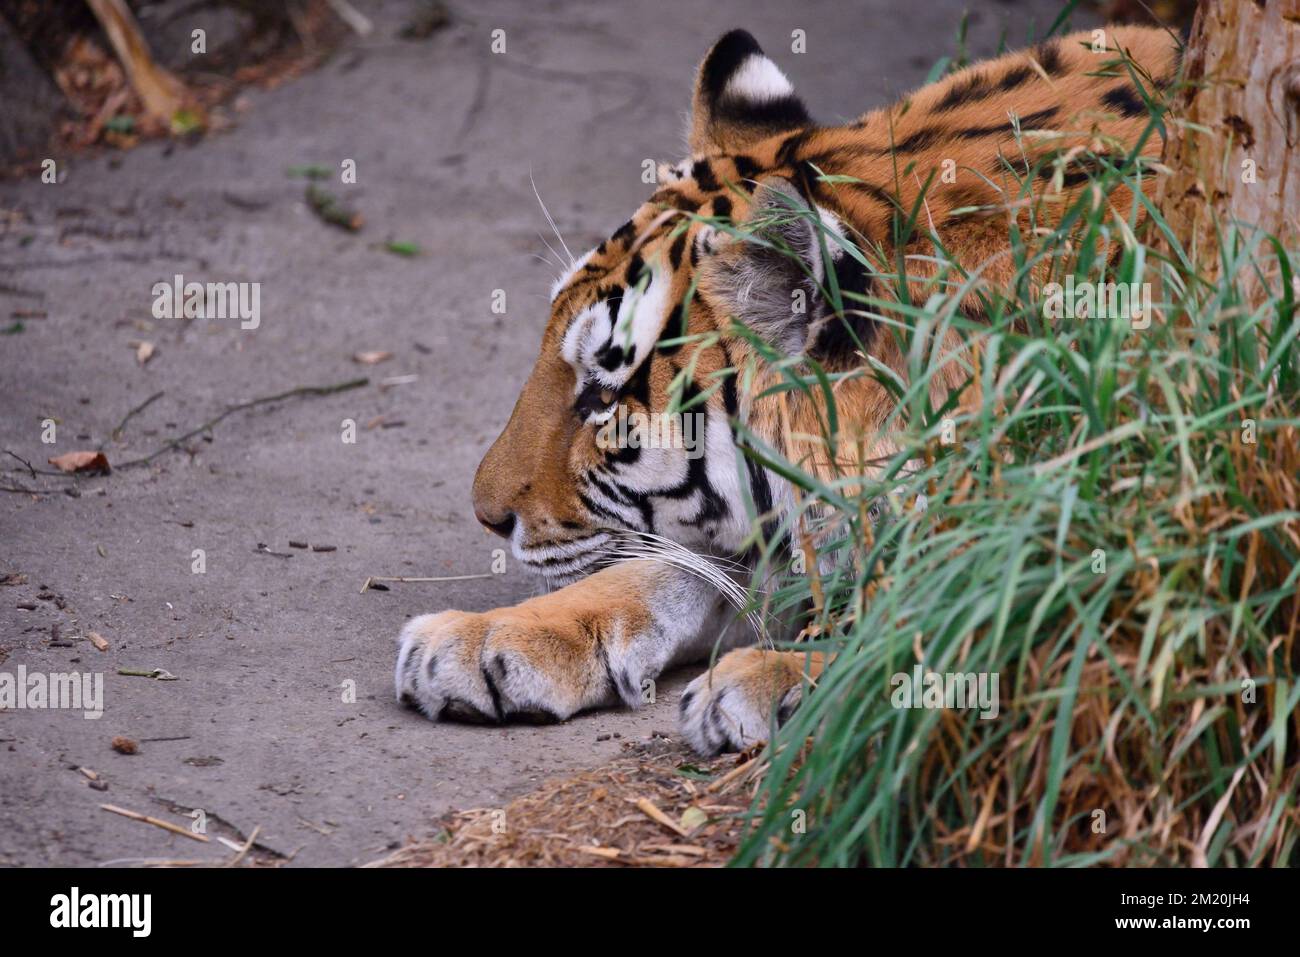 Una vista laterale di una tigre di amur che si trova nel suo habitat in uno zoo Foto Stock